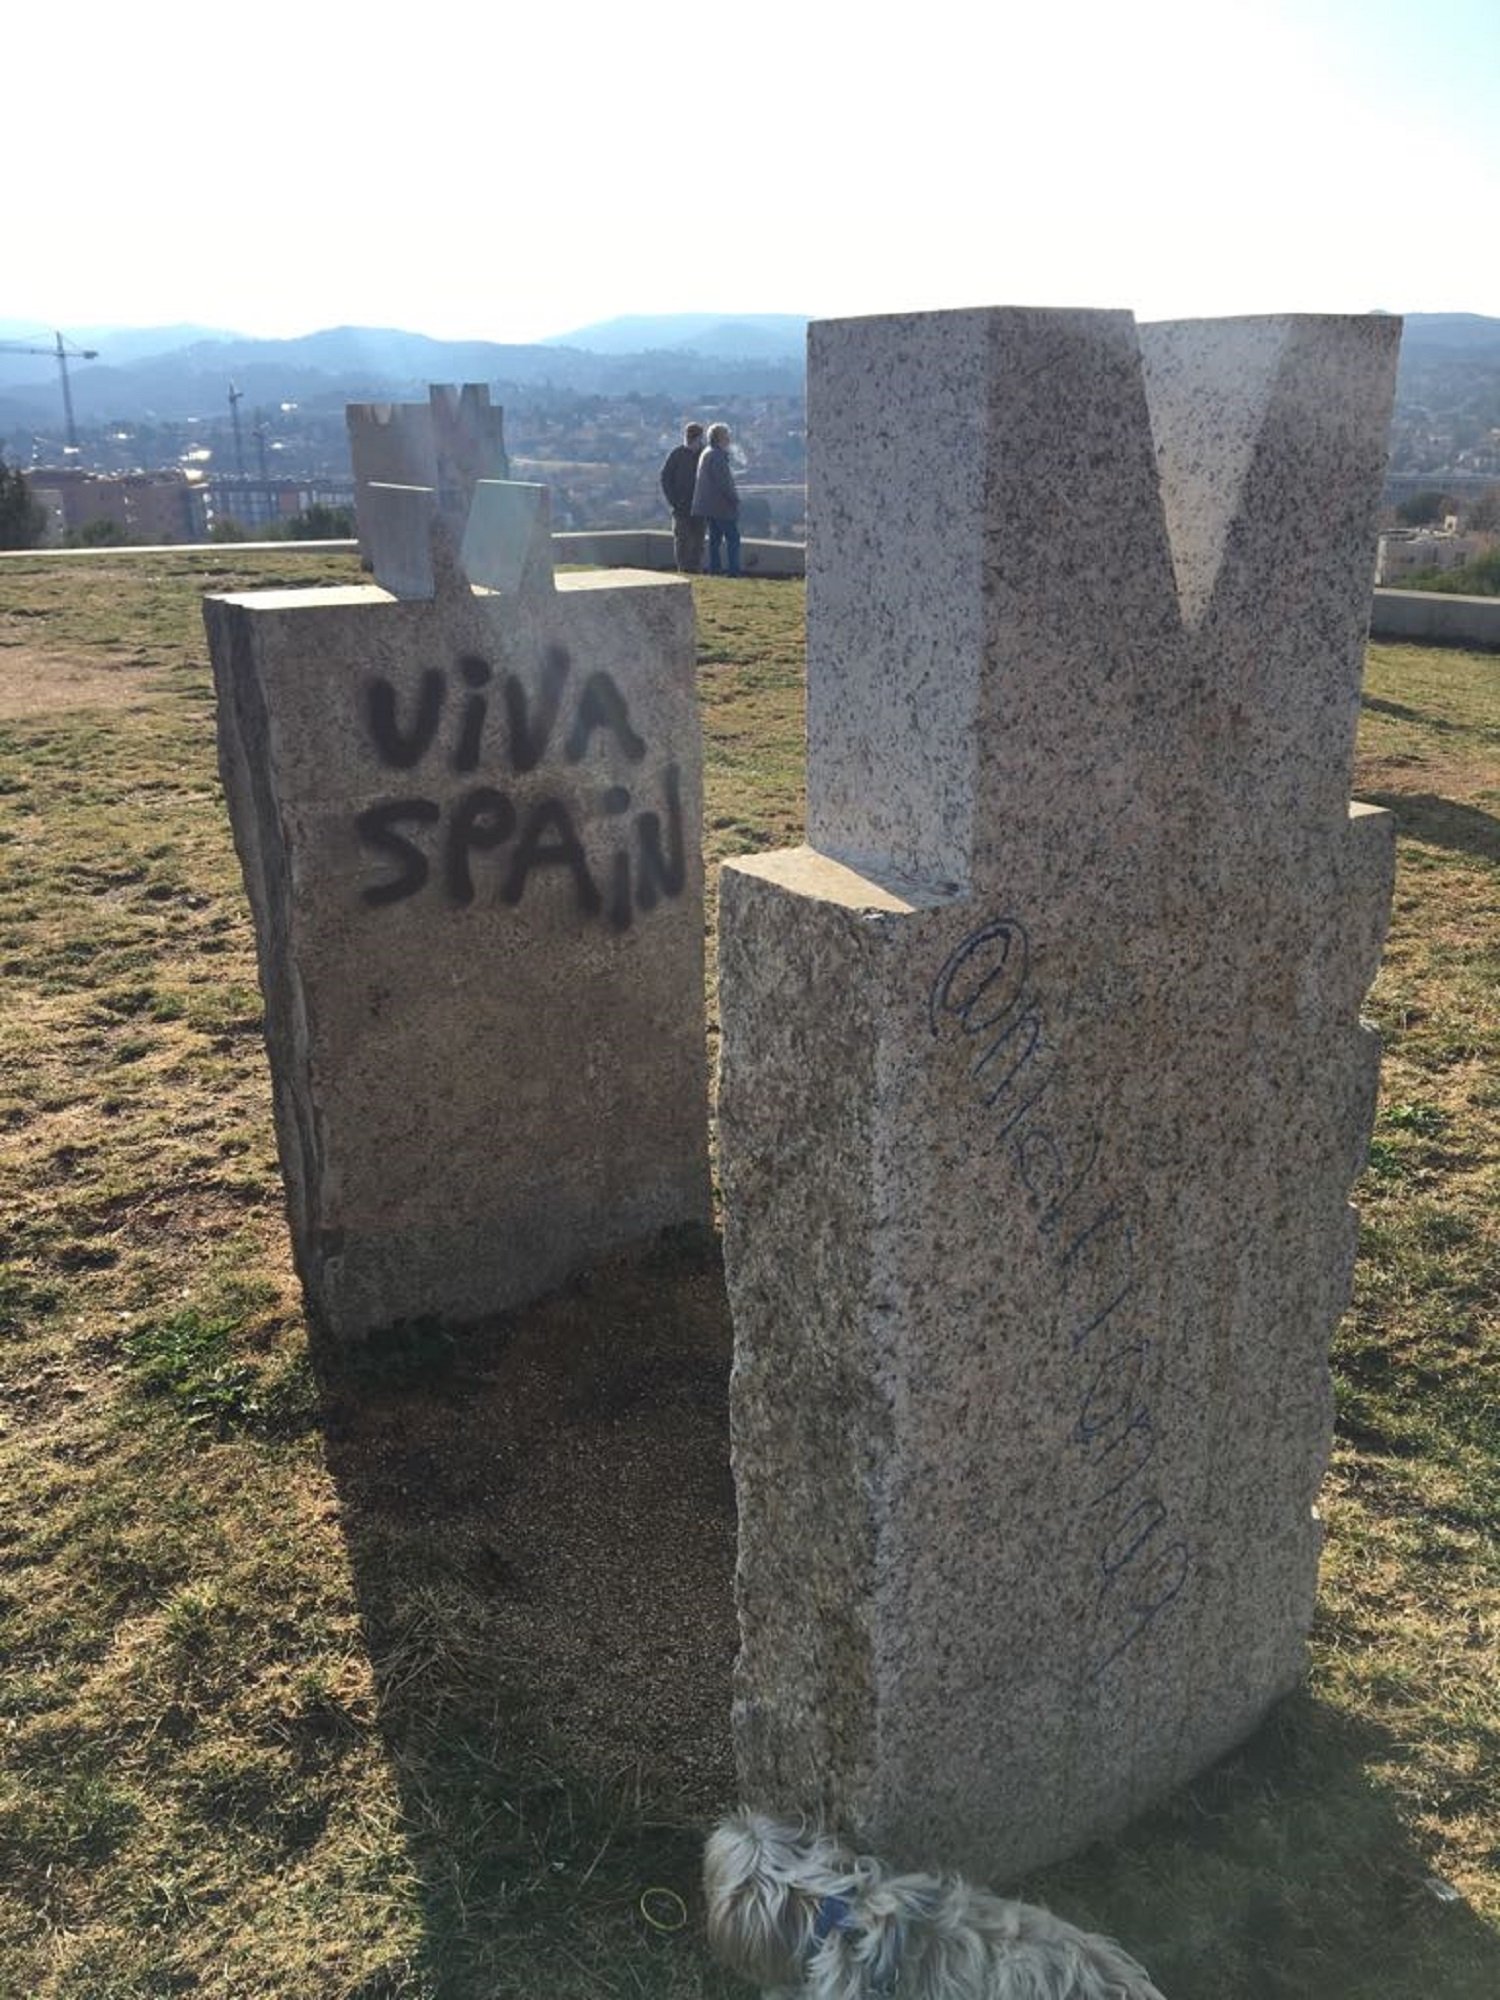 Ataque españolista a un monumento de Sant Cugat